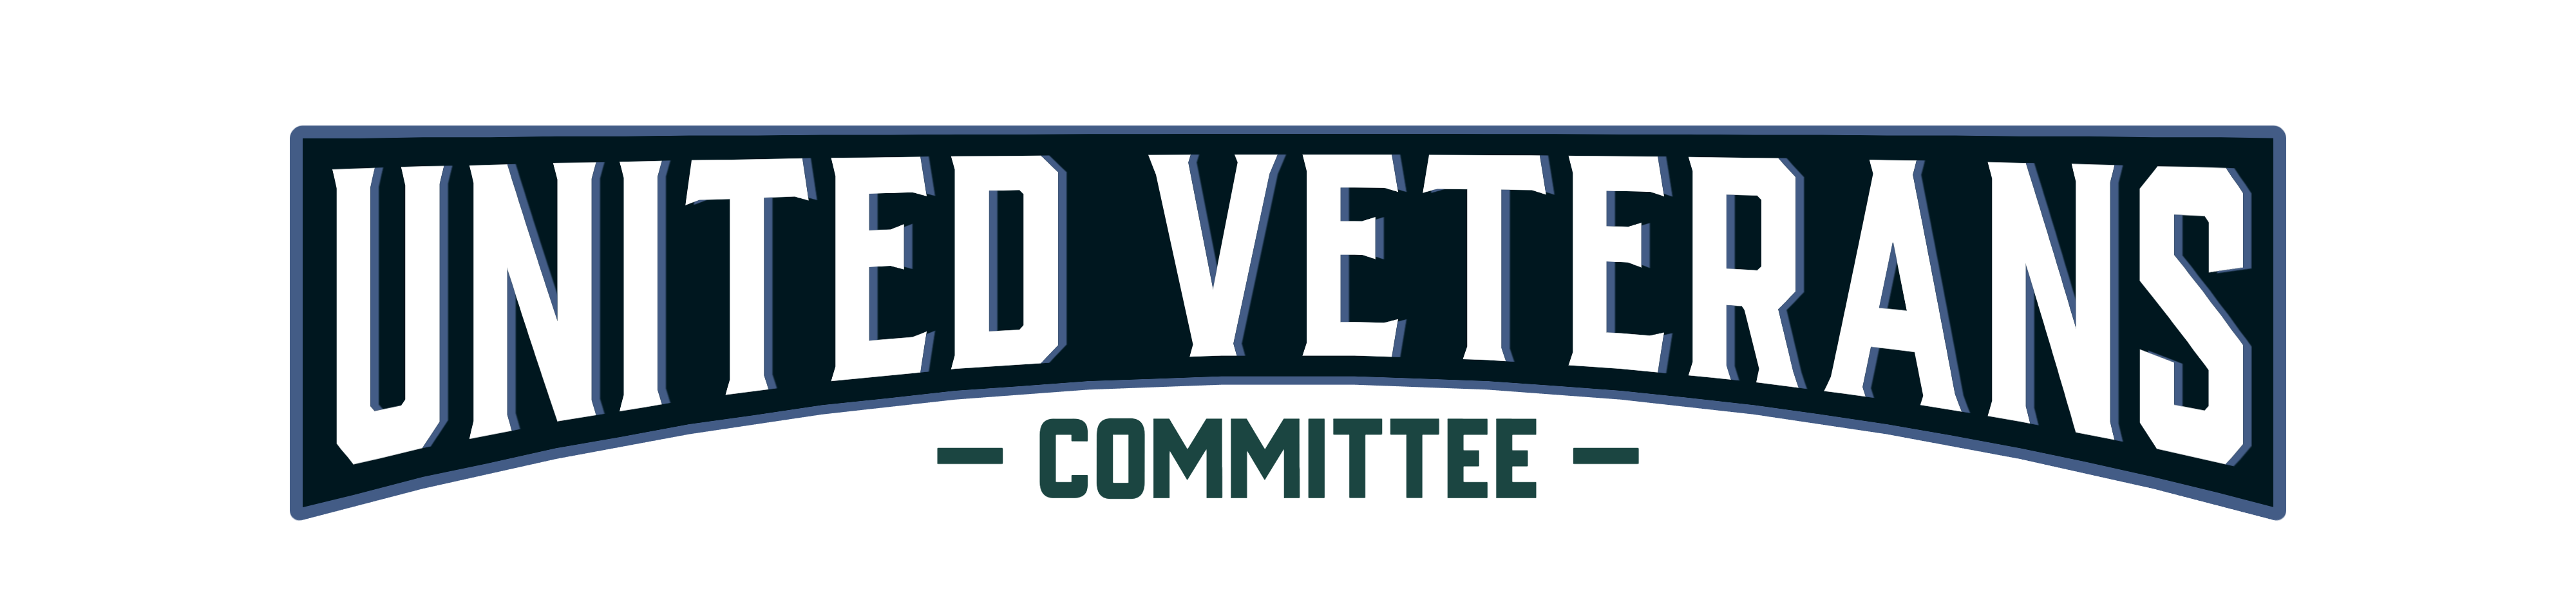 United Veterans Committee